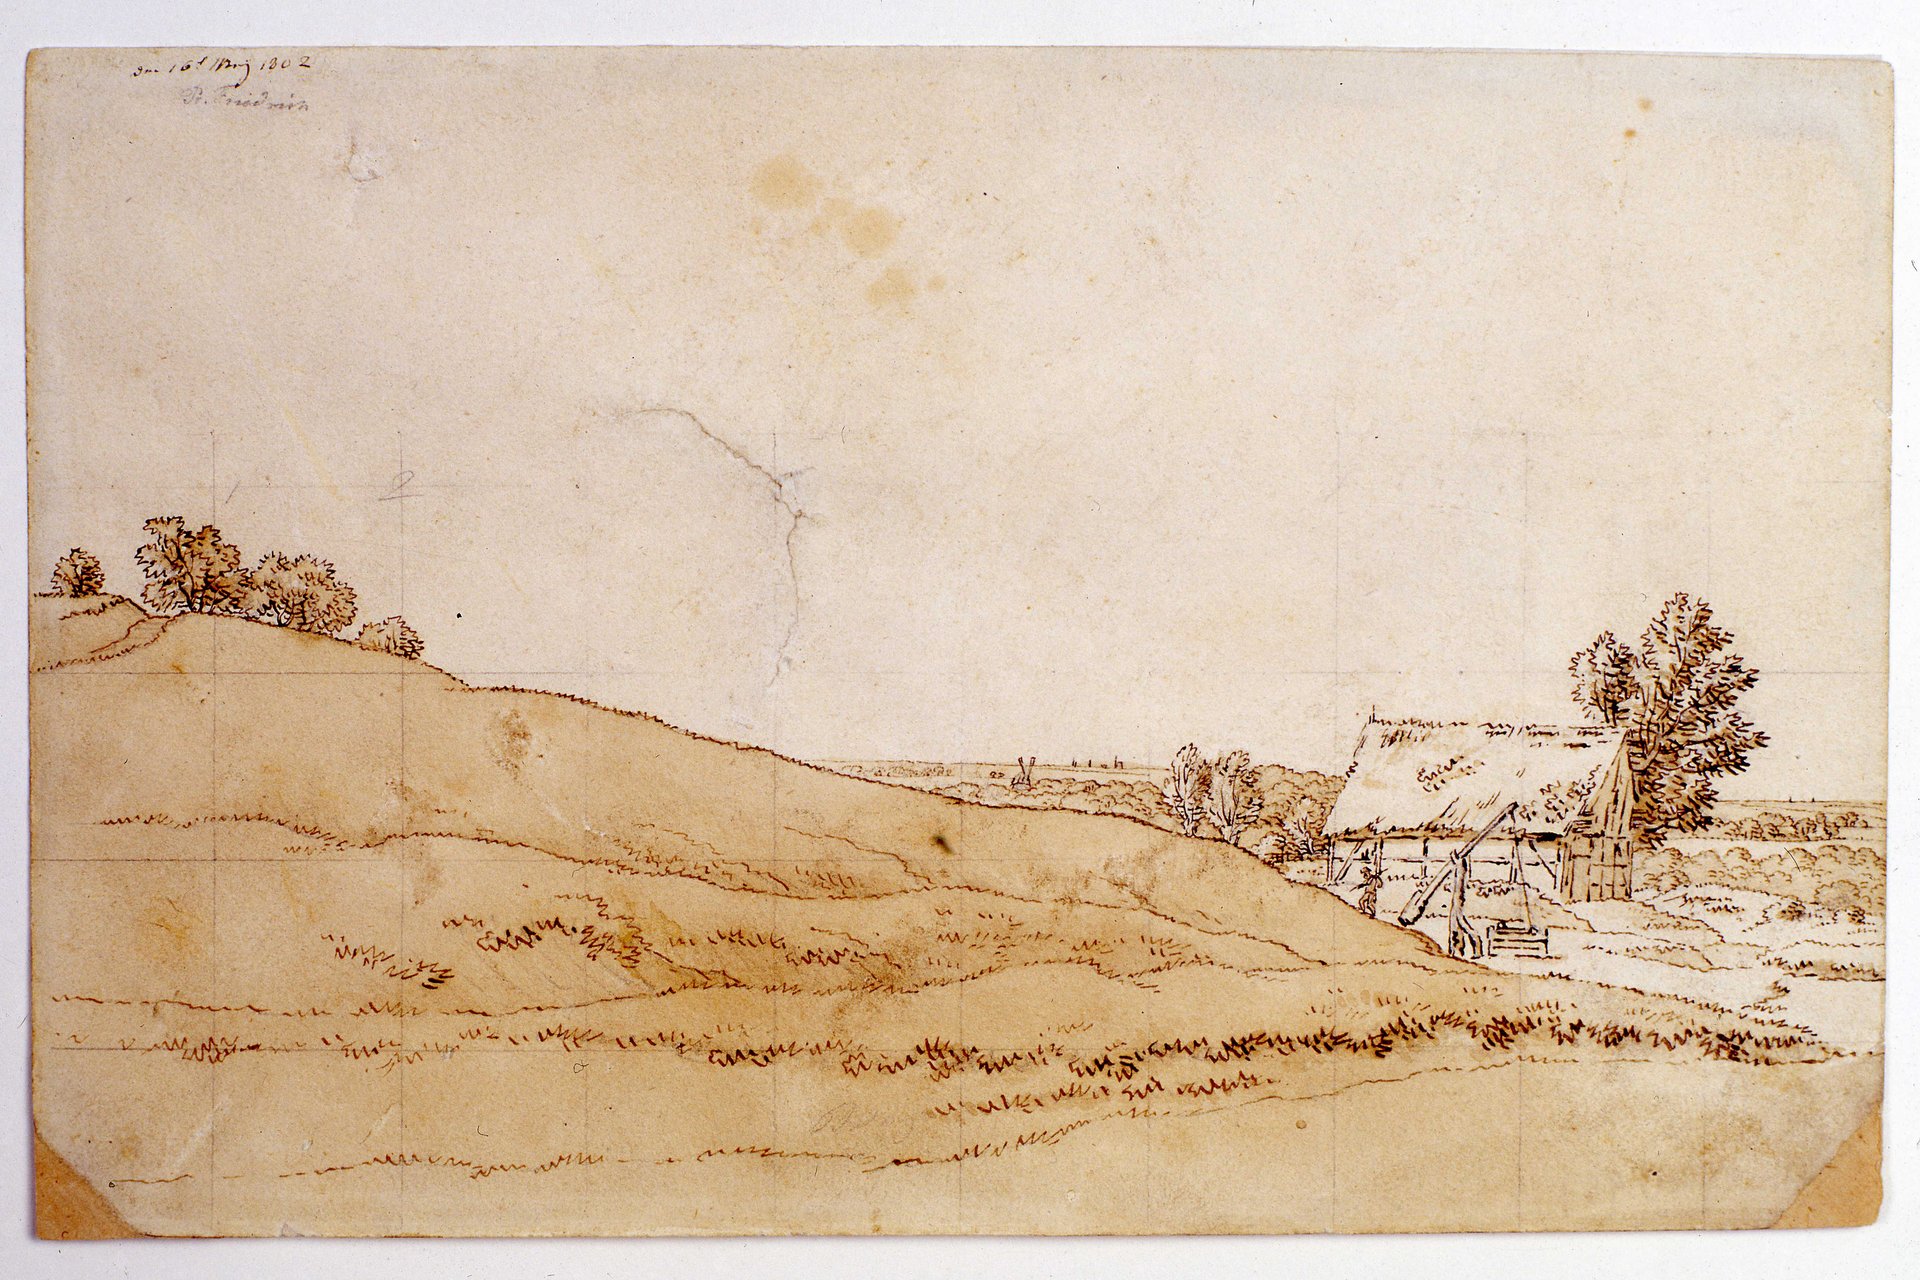 Im Vordergrund hellbraun aquarellierter, nach rechts abfallender Hügel. Im Hintergrund rechts eine reedgedeckte Fachwerkhütte mit Ziehbrunnen, daneben eine kleine Figur. 